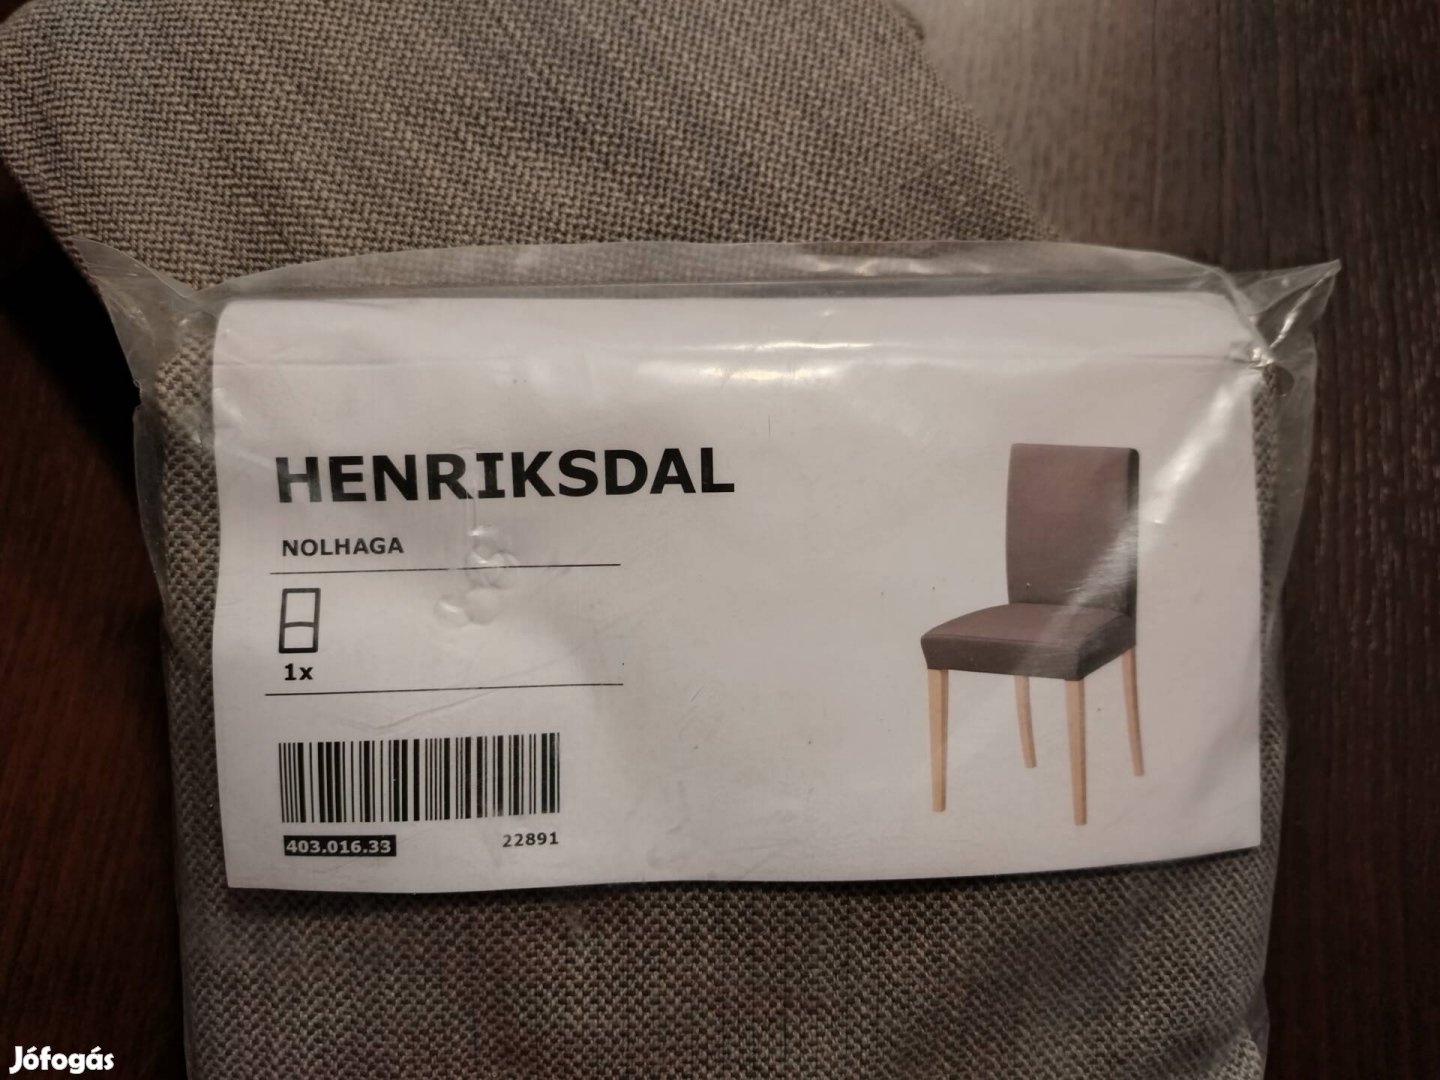 Henriksdal szék huzatok szállítással harmad ár alatt: 2 db együttesen